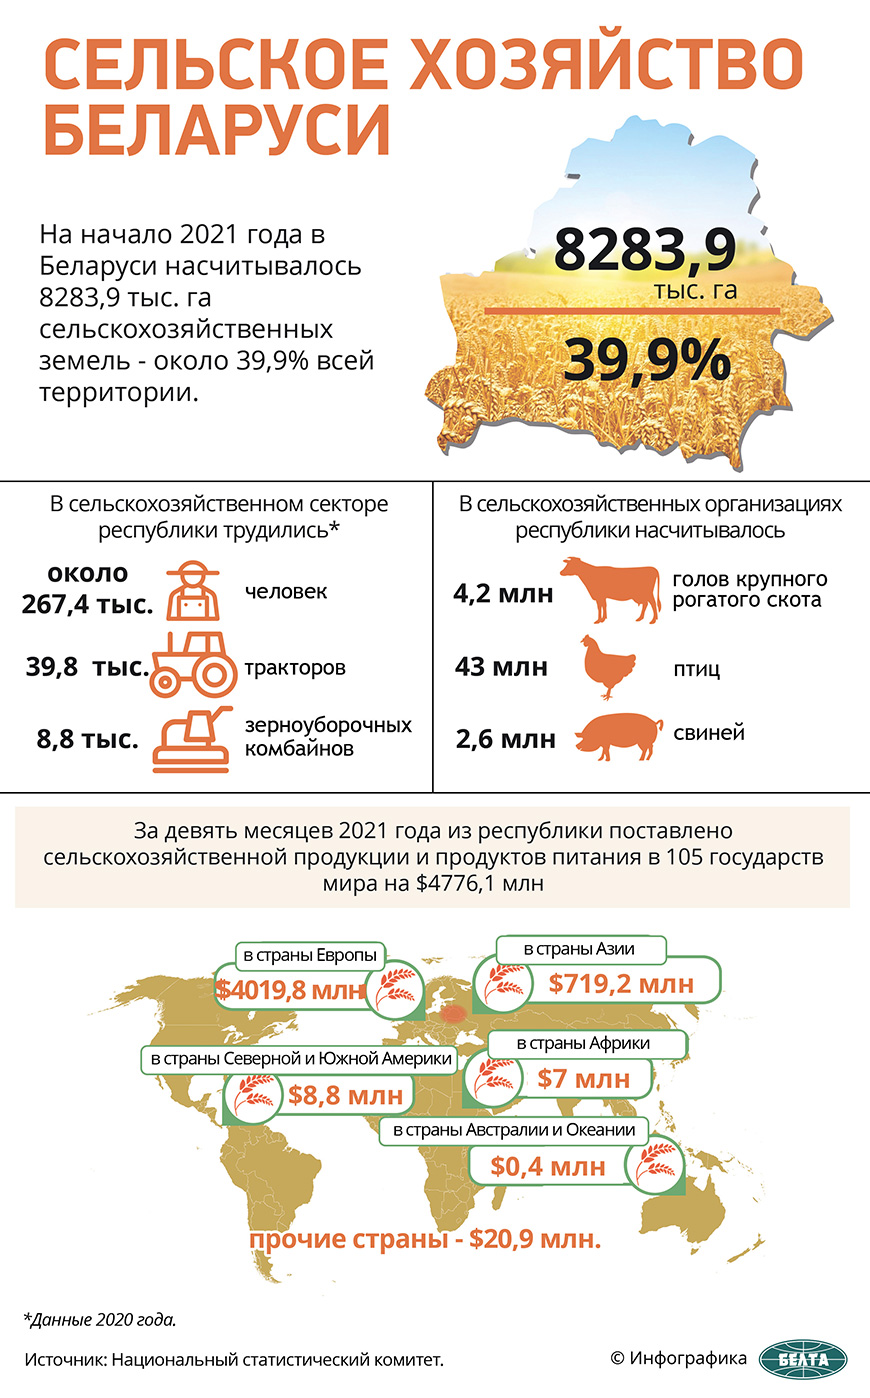 Сельское хозяйство Беларуси